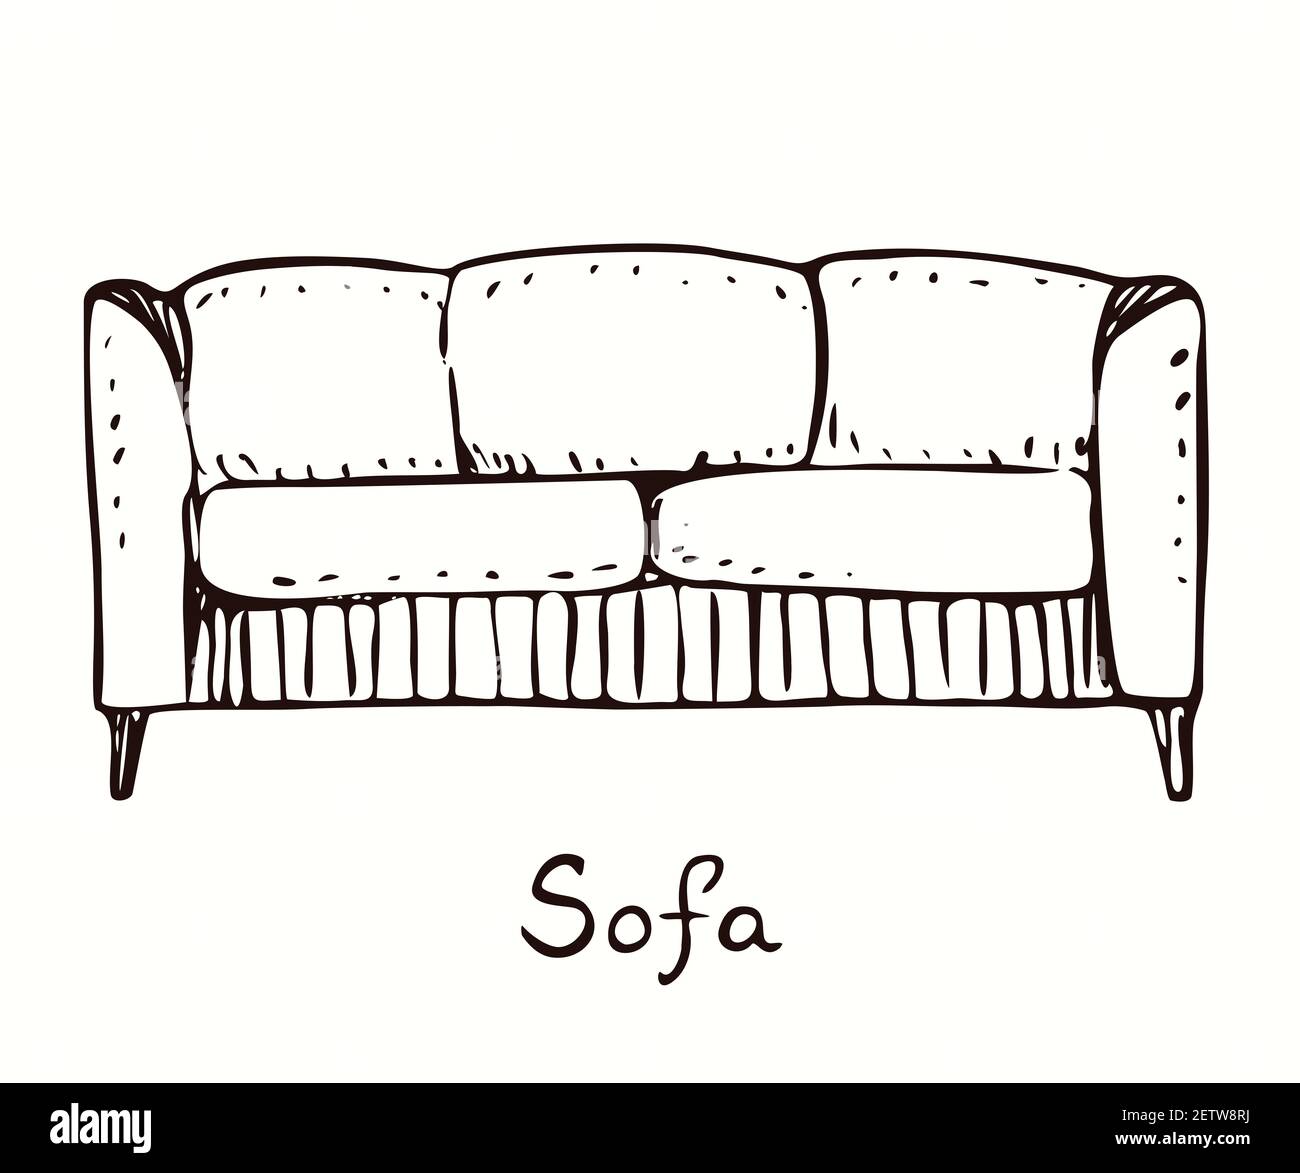 Sofa Vorderansicht, handgezeichneter Doodle, Zeichnung im Tiefdruck-Stil,  Skizzendarstellung Stockfotografie - Alamy